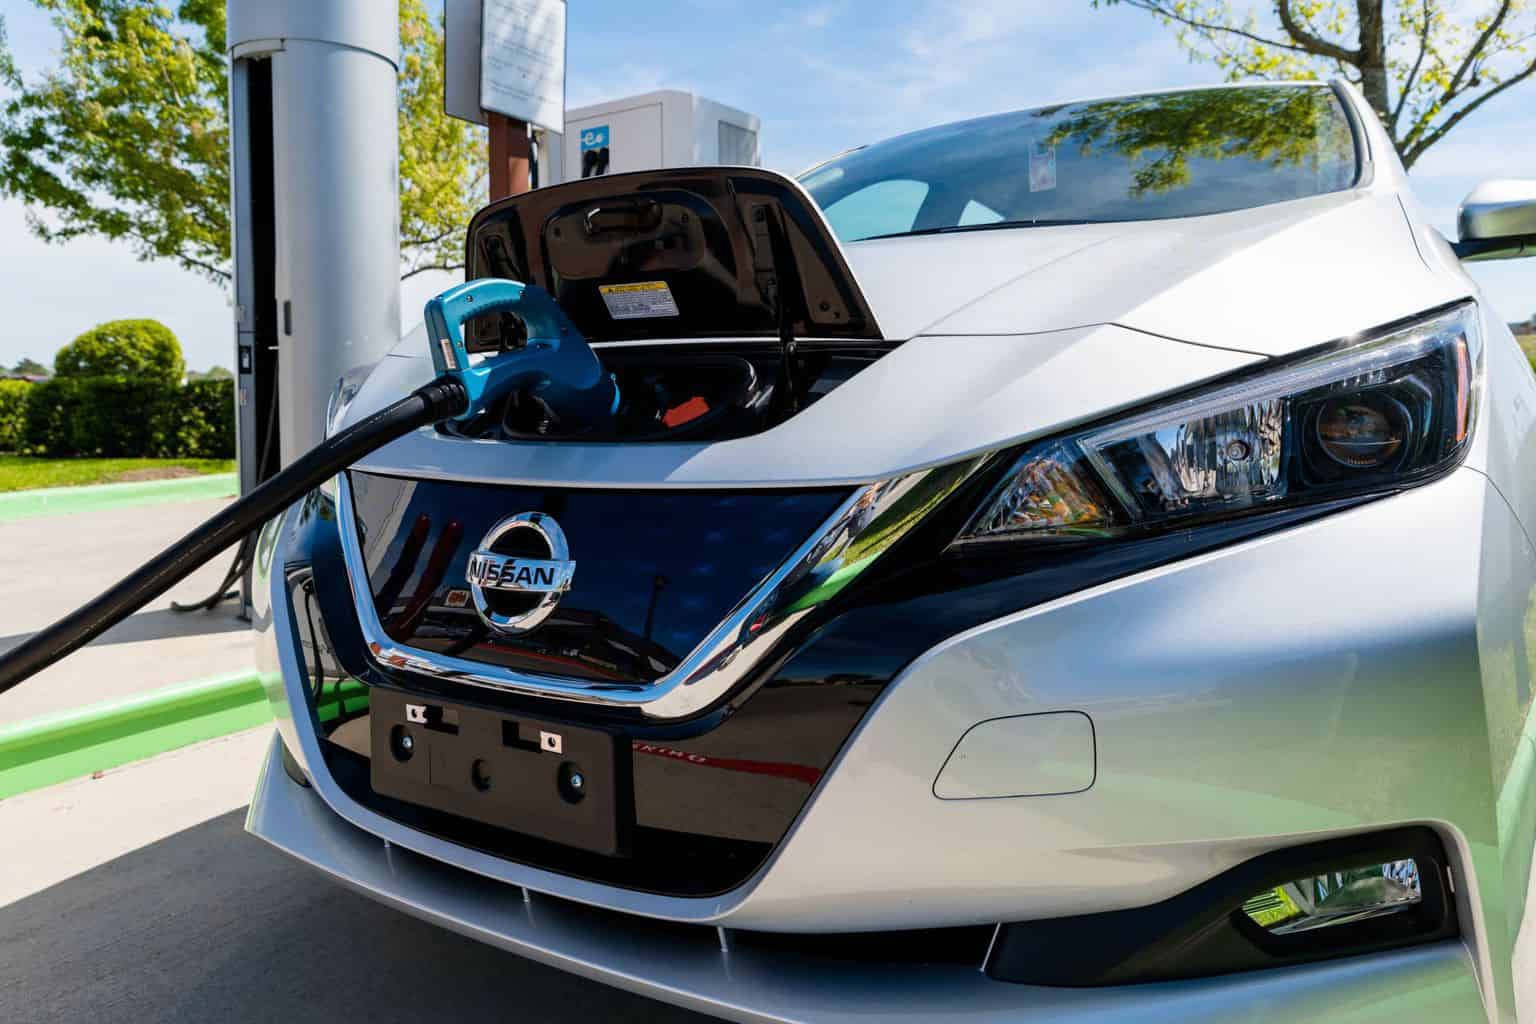 Nissan erprobt Zukunft des bezahlten Parkens - Parkgebühr wird mit Strom beglichen